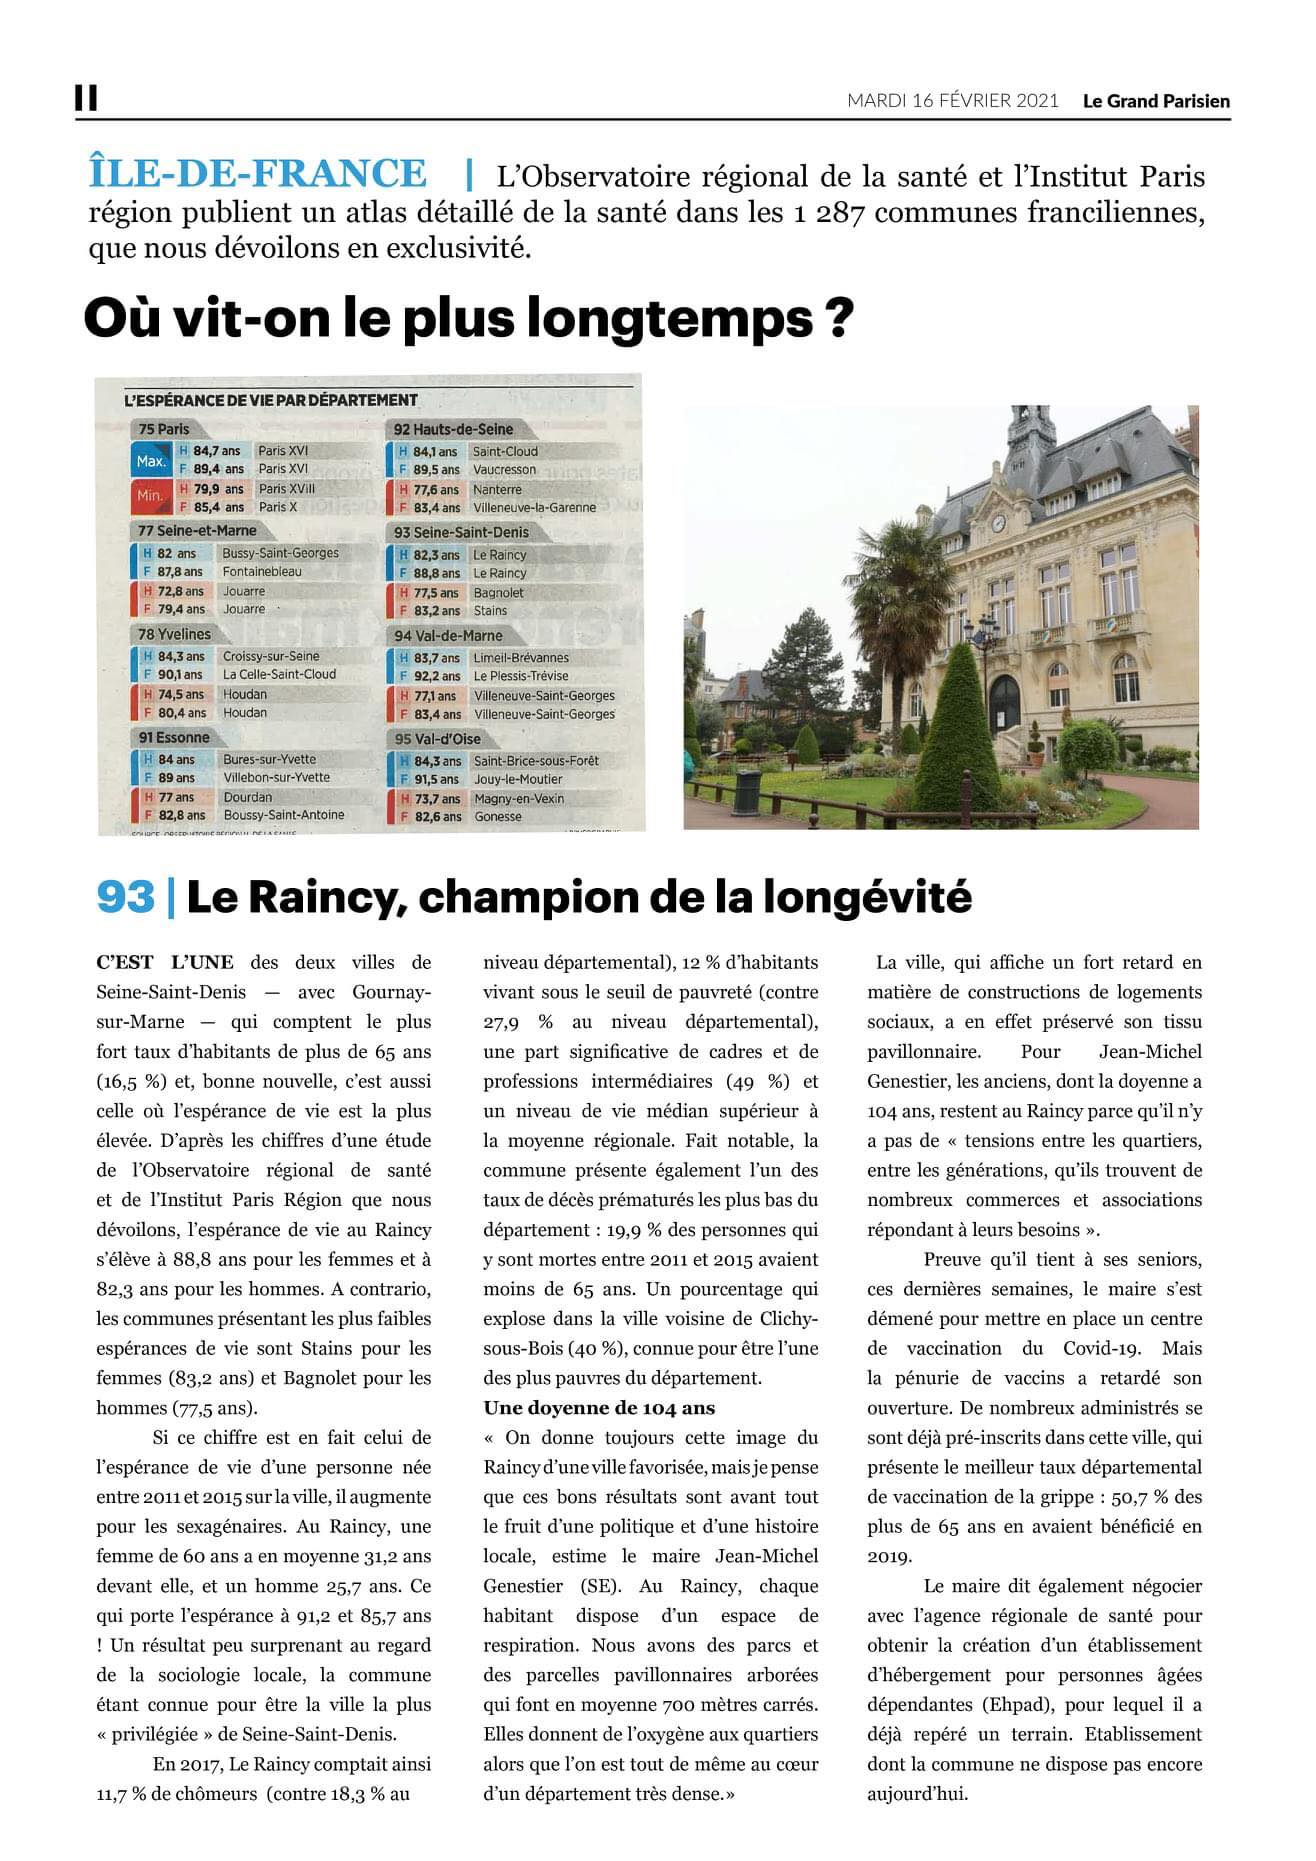 Le Parisien du 16 février 2021: Le Raincy, champion de la longevité dans le 93